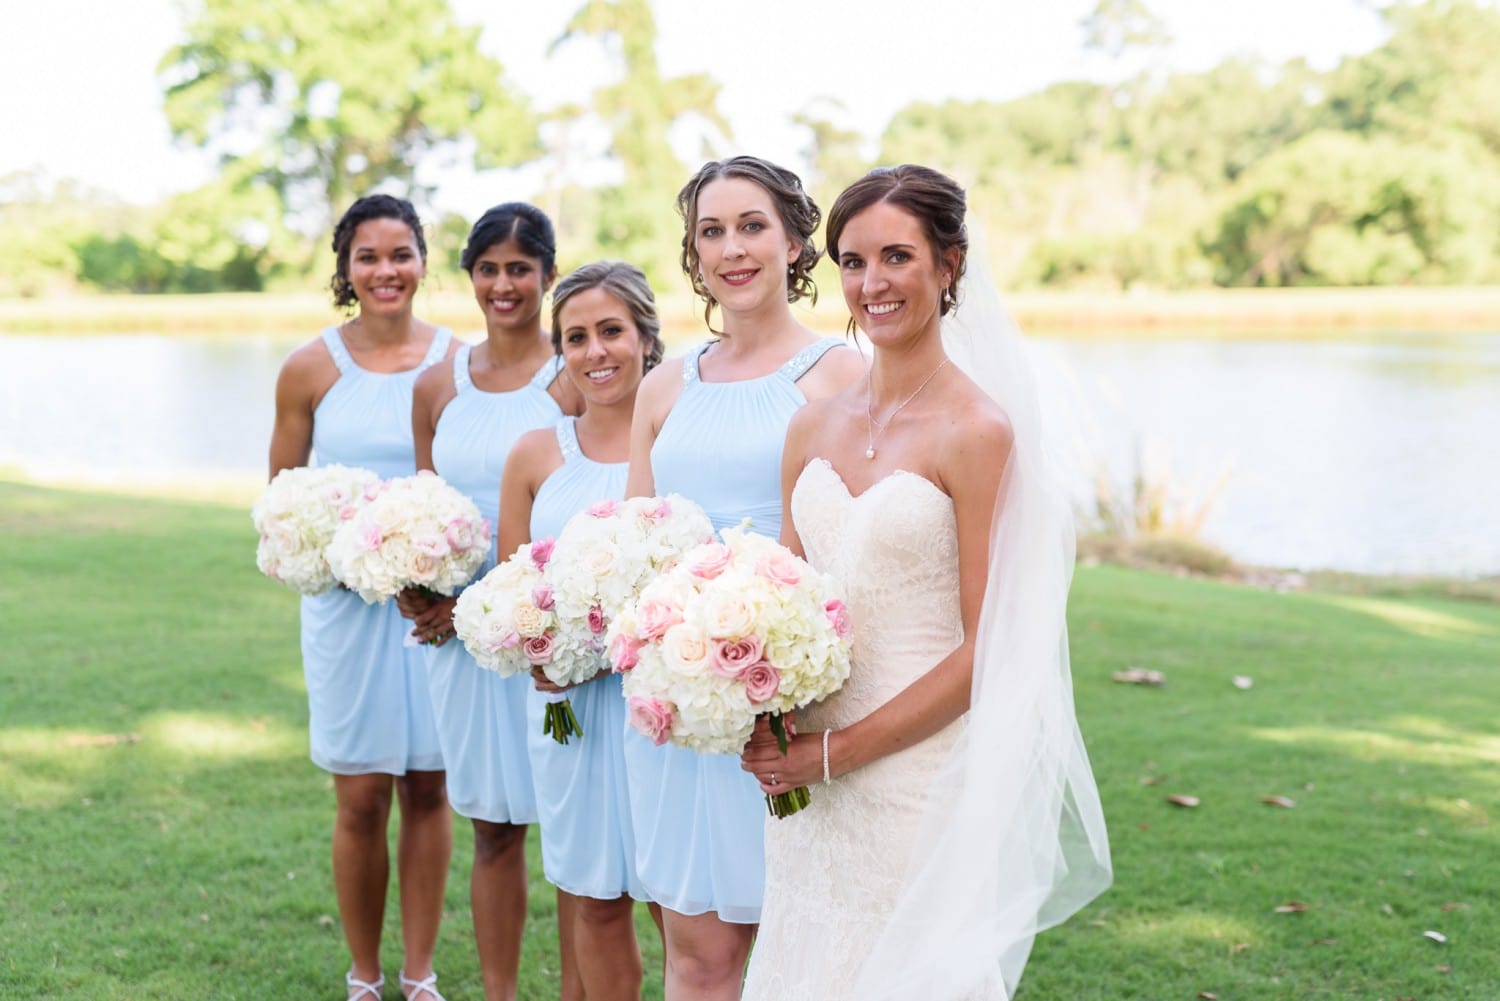 Bride in focus with bridesmaids behind - Pawleys Plantation